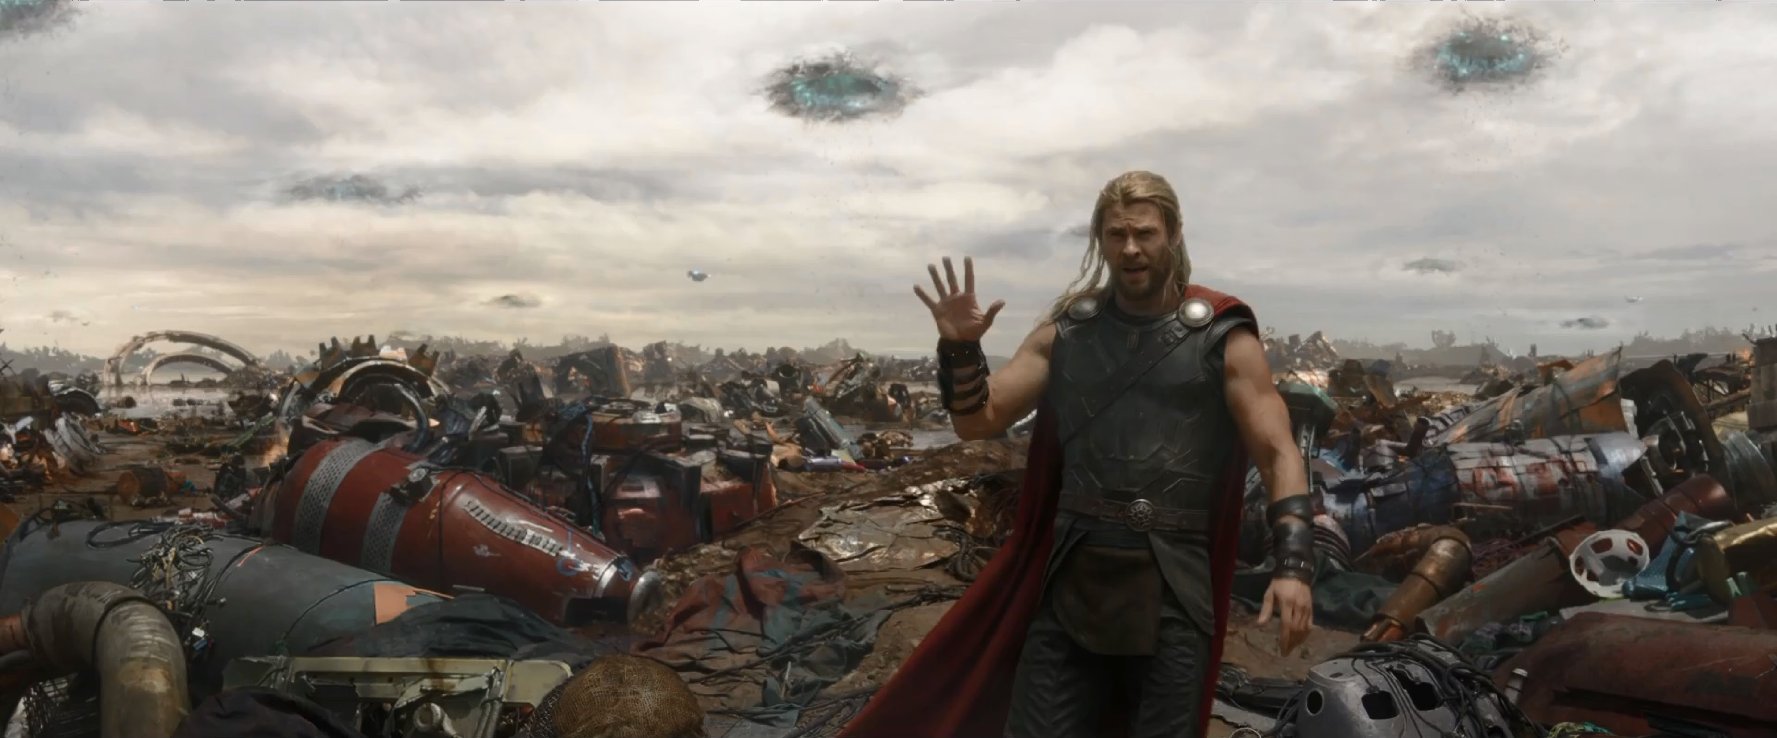 Thor: Ragnarok instaling